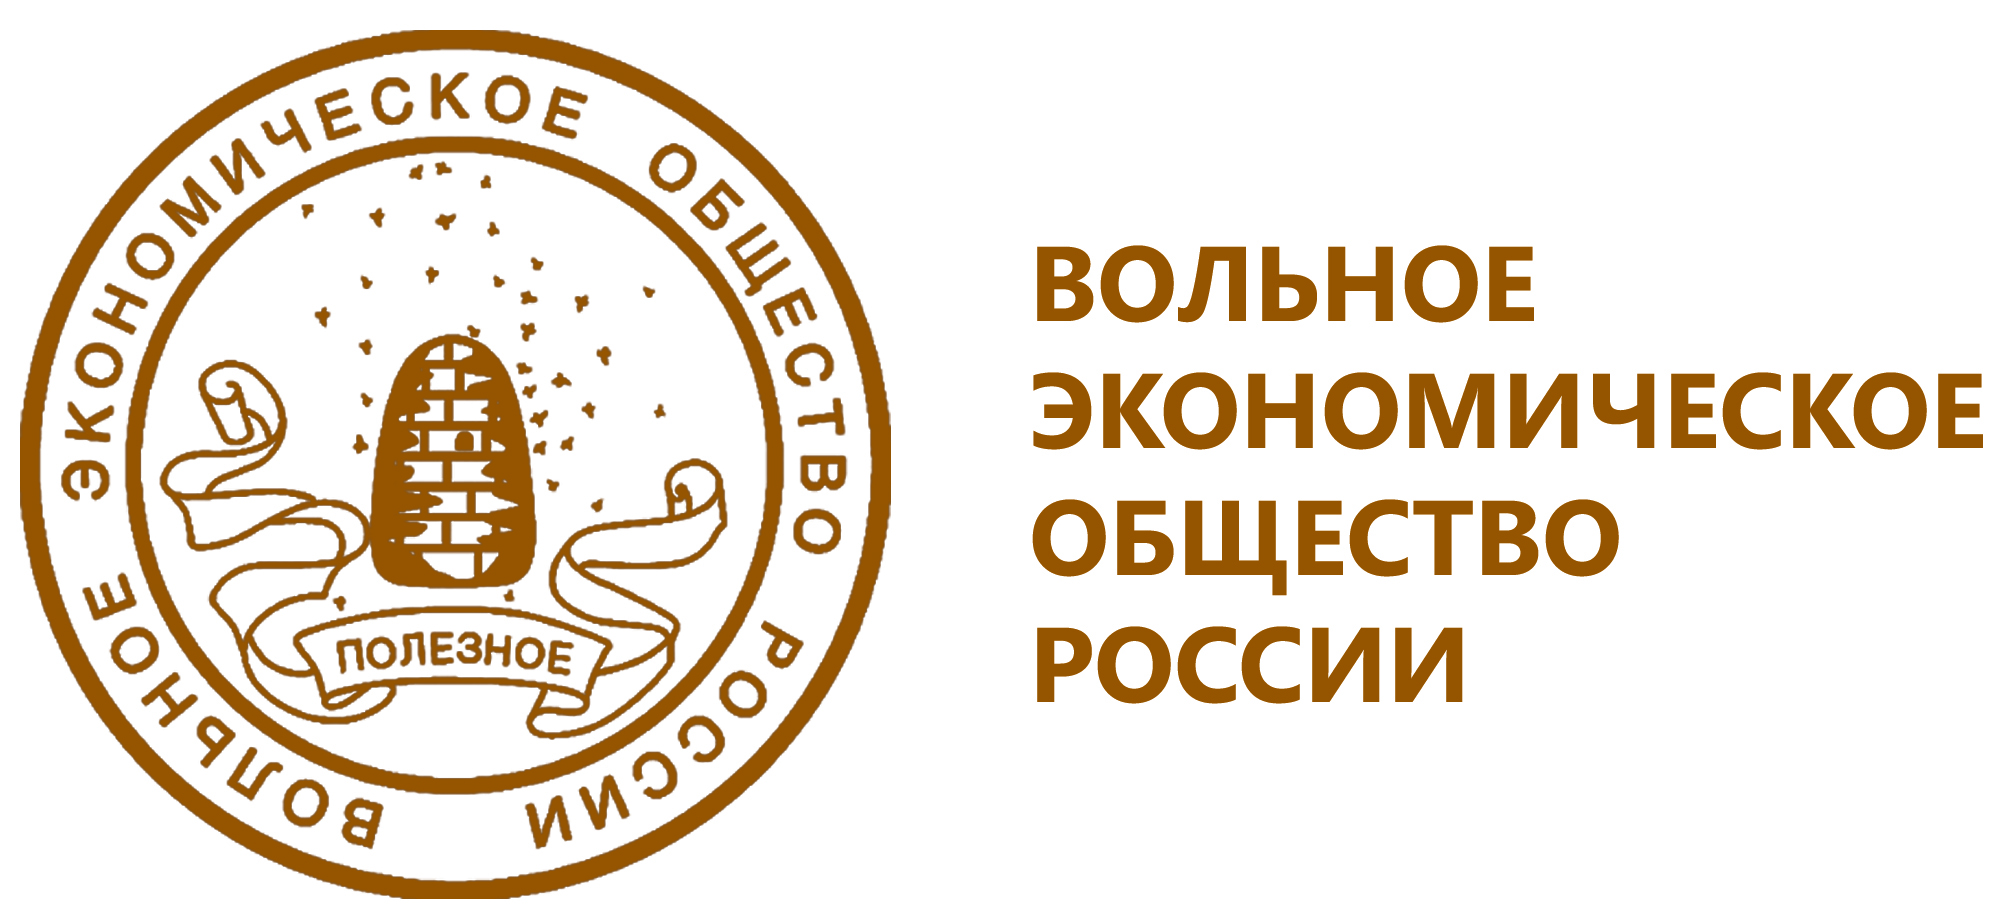 Единое экономическое общество. Логотип ВЭО России. Вольное экономическое общество (ВЭО). Эмблема вольного экономического общества. Волна экономическое общемтво.